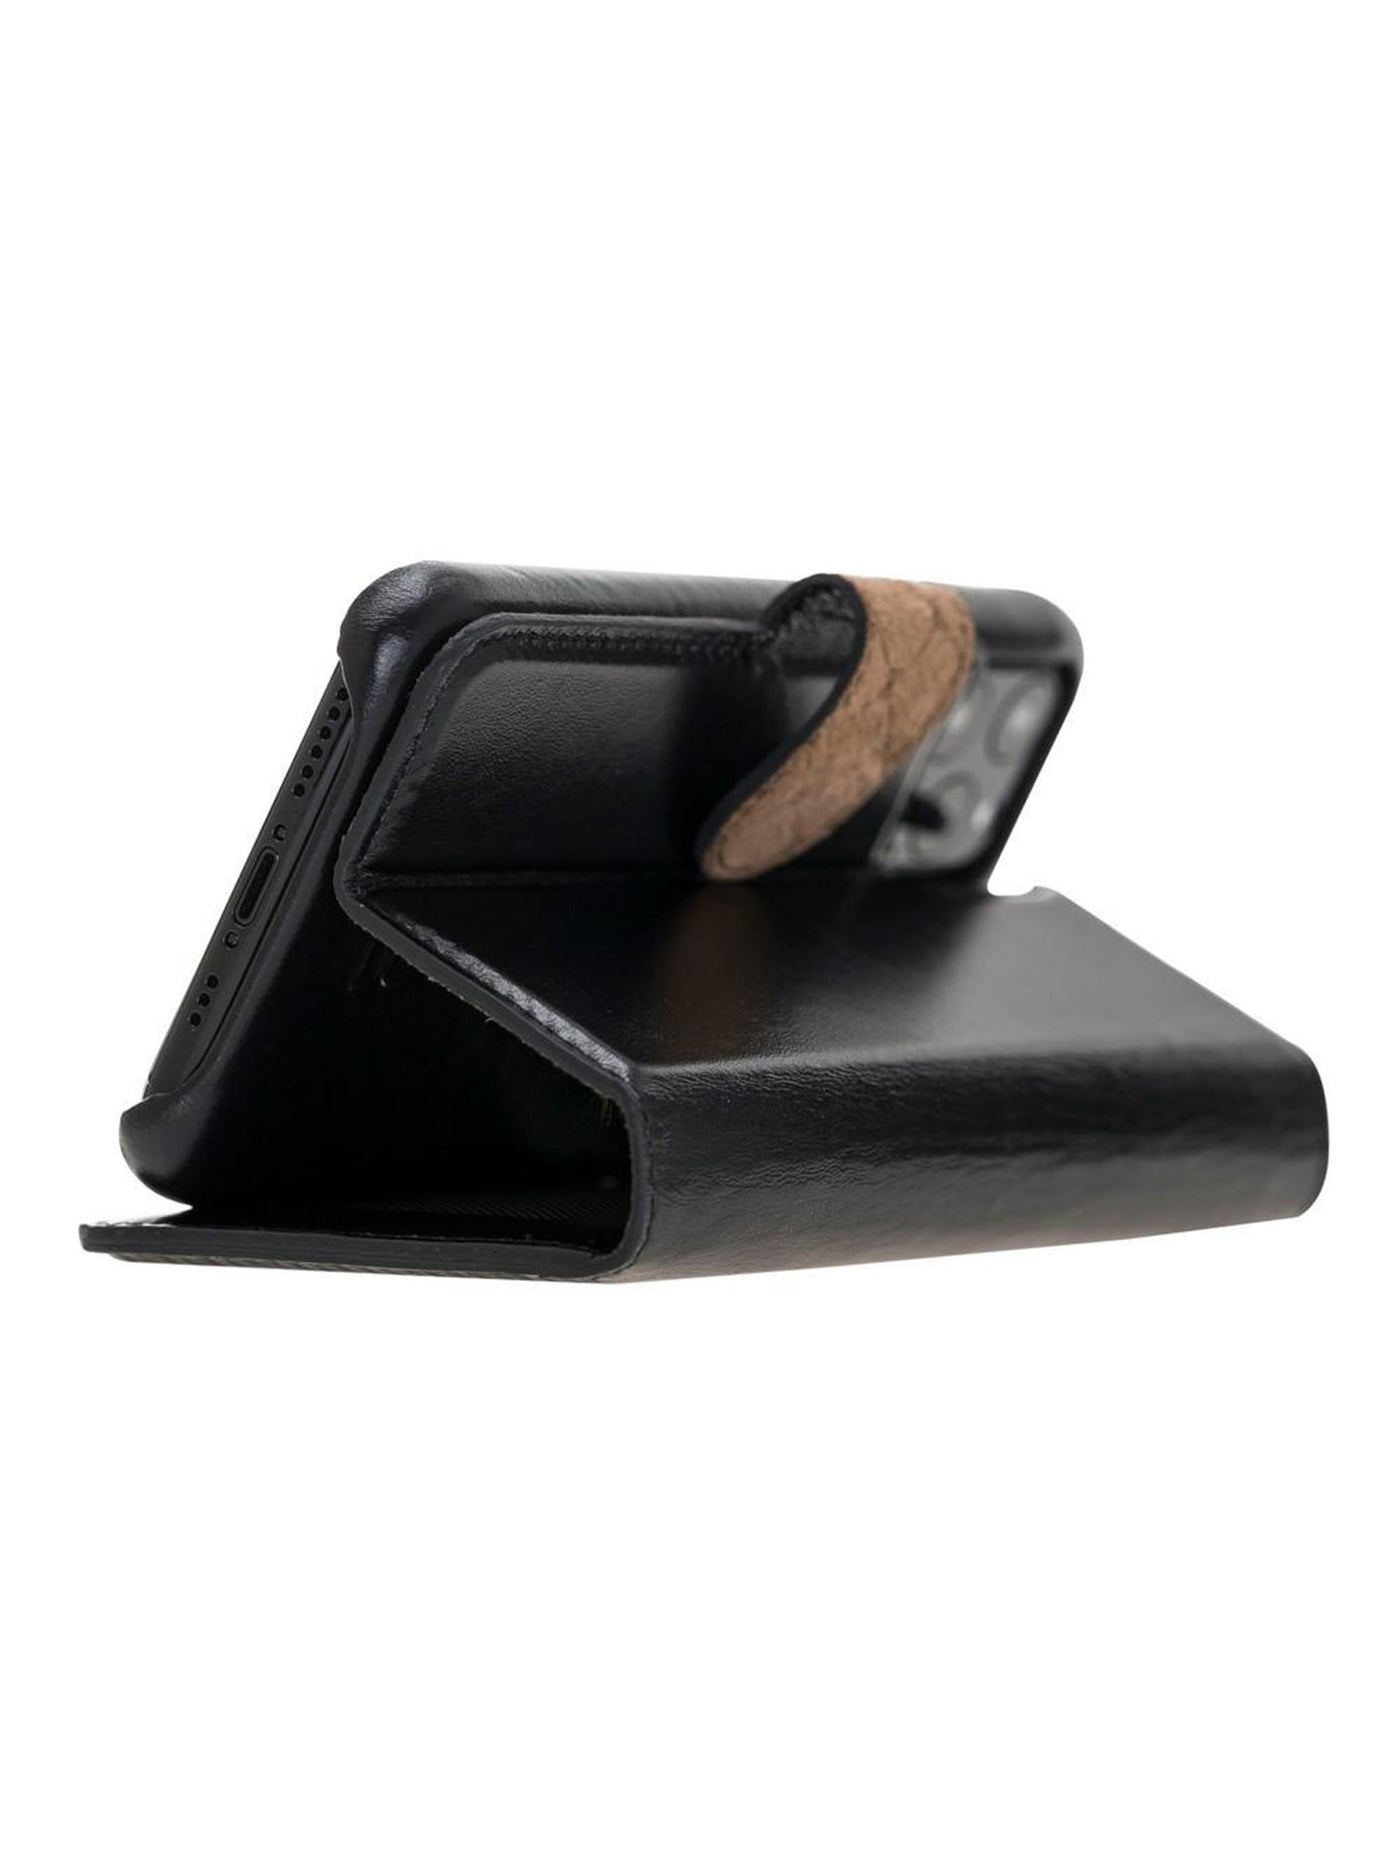 Plånboksfodral med avtagbart magnetskal i äkta läder för Apple iPhone 11 Pro Max från Bouletta Jersey- Svart #color_svart